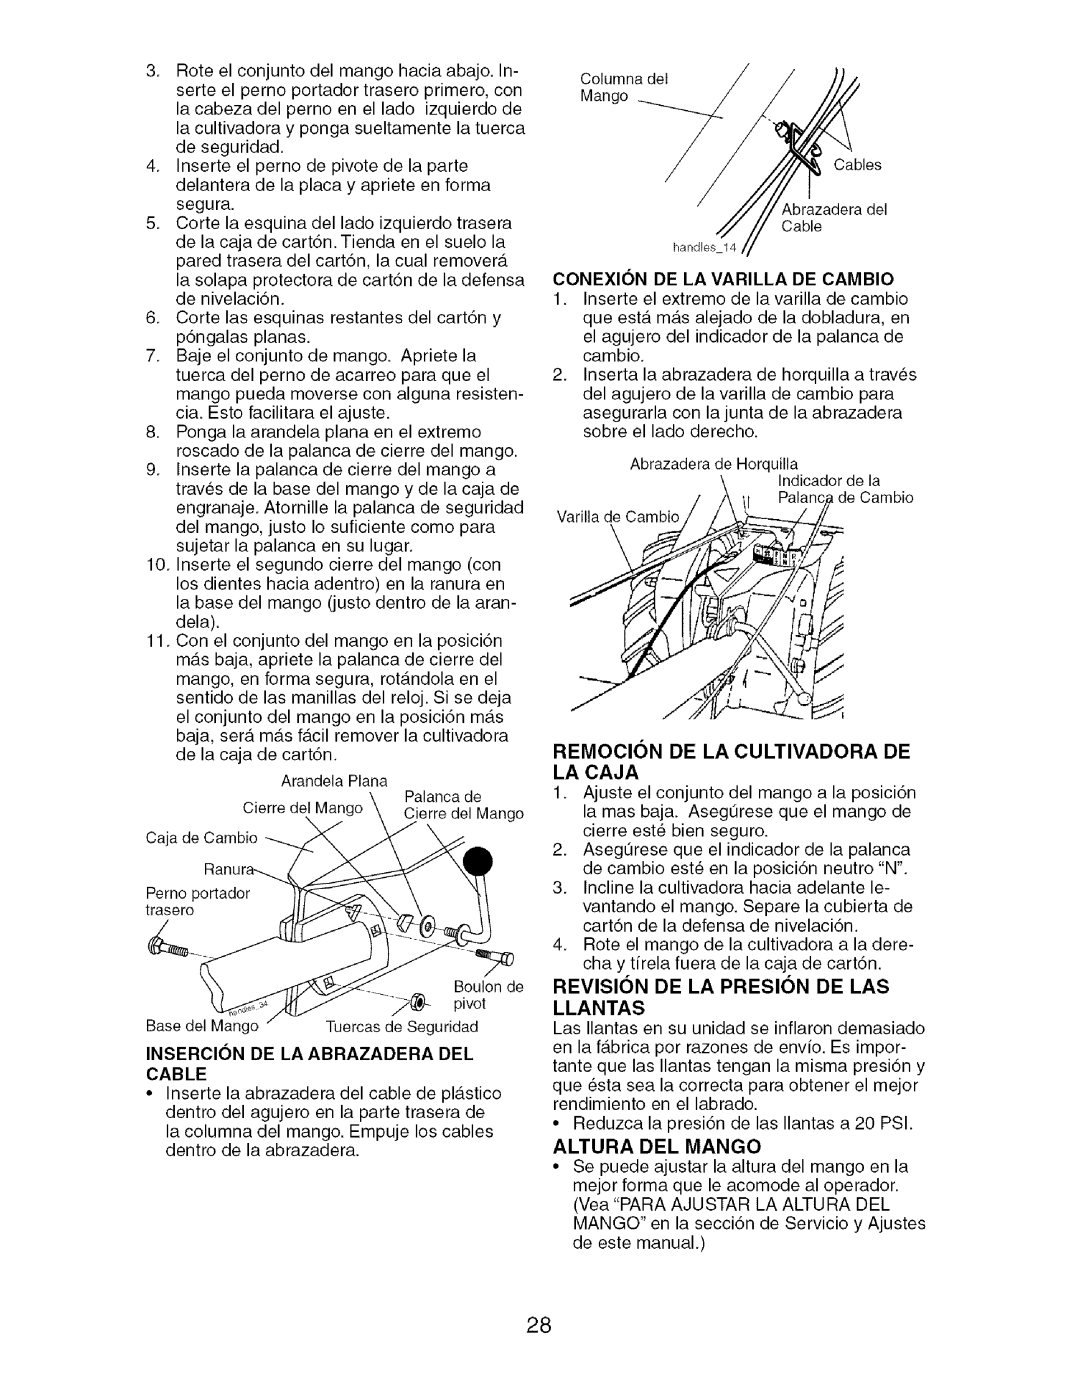 Craftsman 917.29604 owner manual Insercion De La Abrazadera Del Cable, Remocion De La Cultivadora De La Caja 